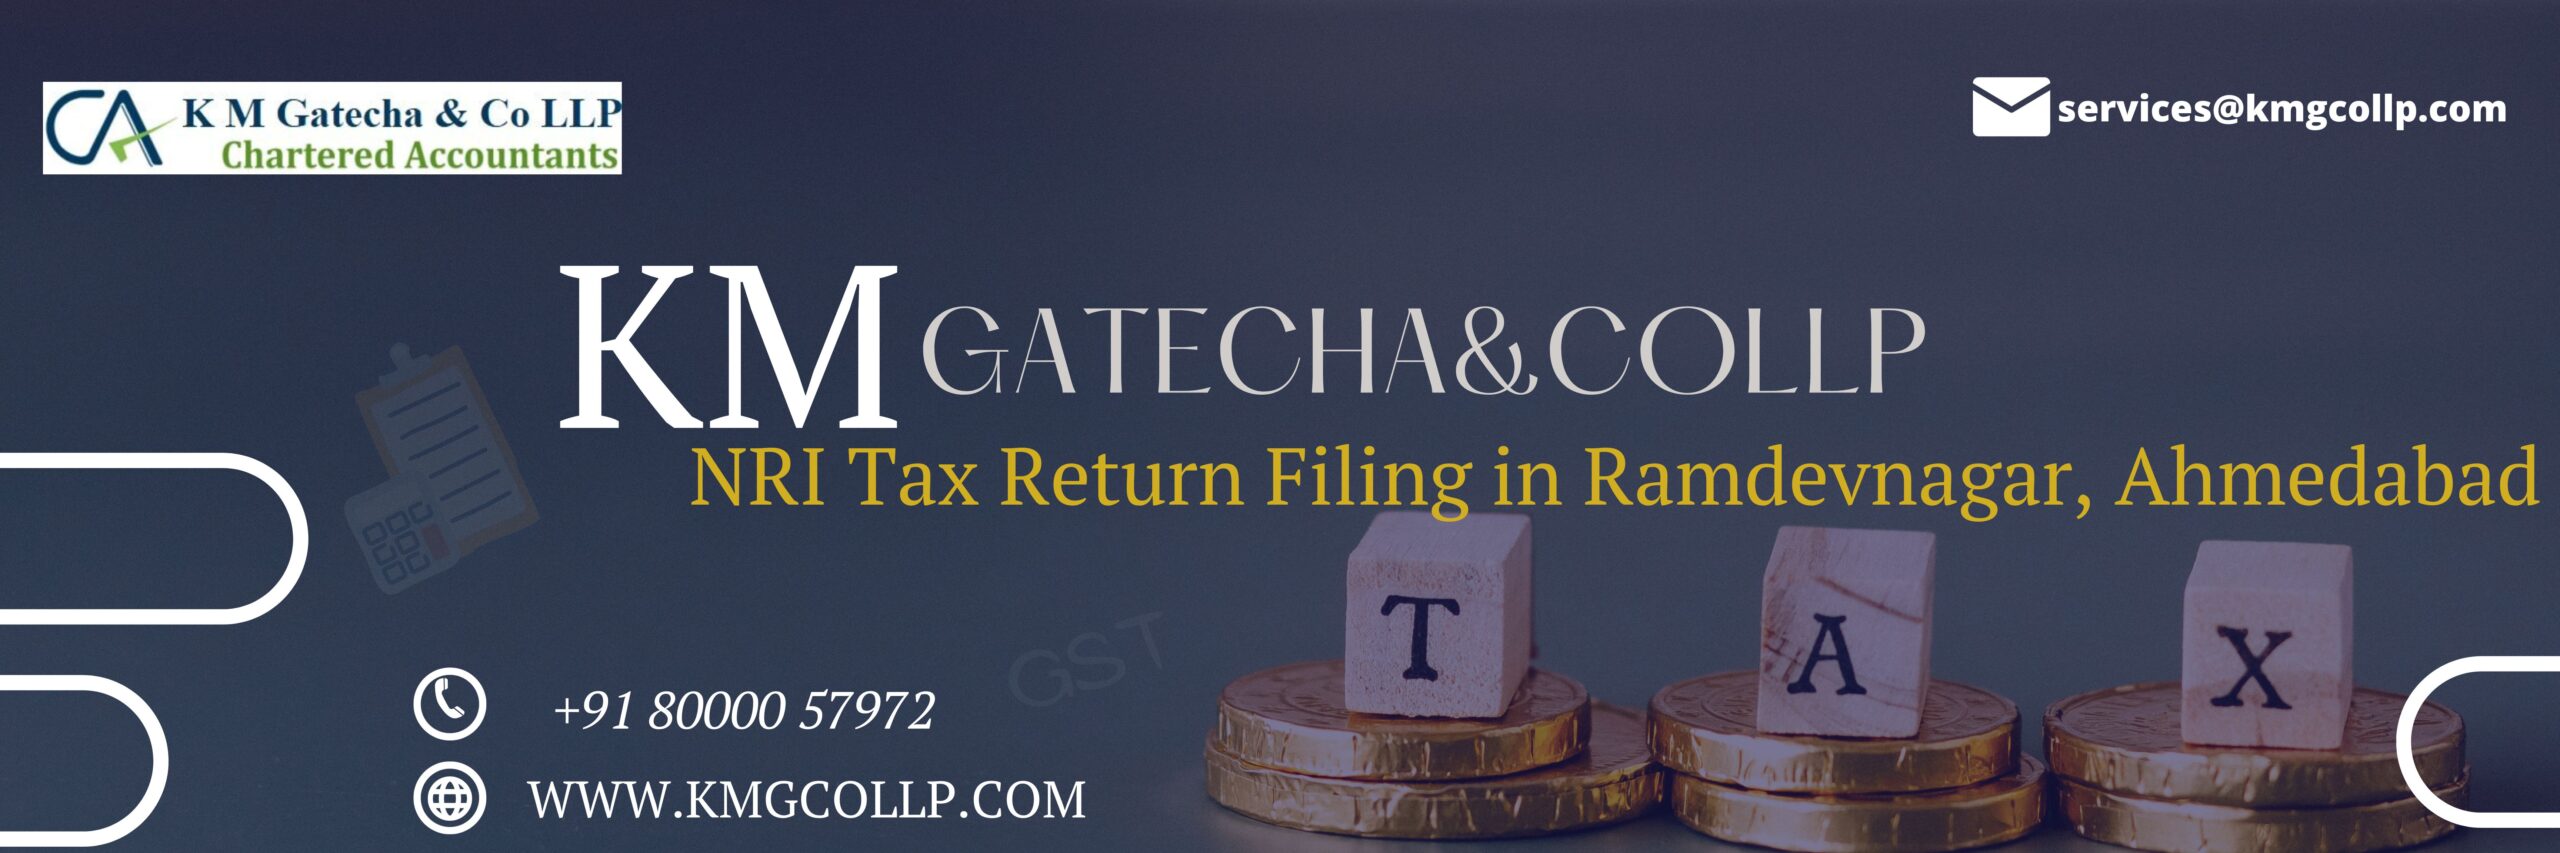 NRI Tax Return Filing in Ramdevnagar